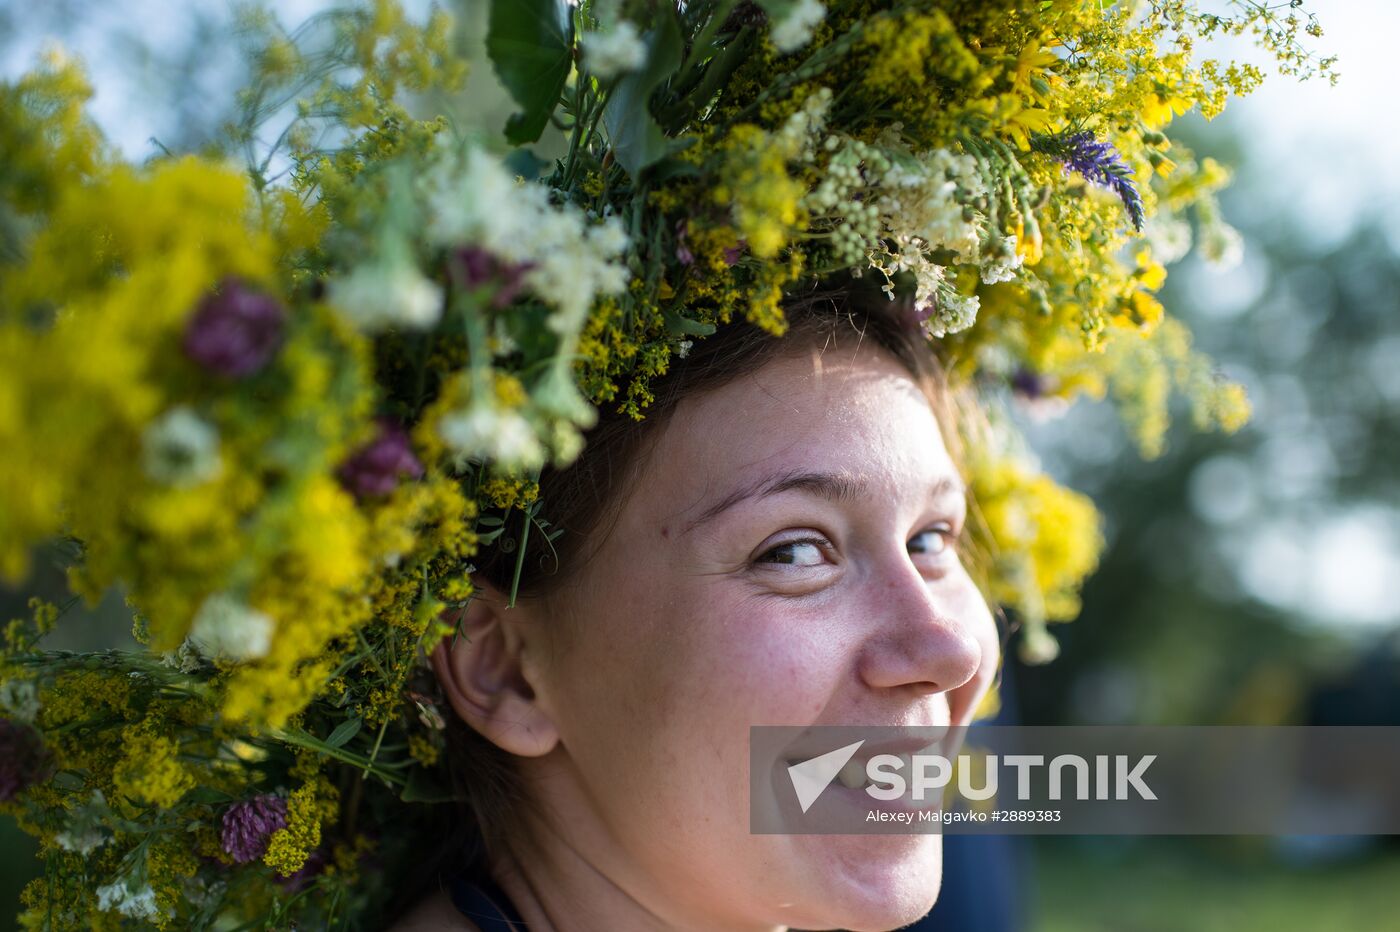 Ivan Kupala Day celebrations in Omsk Region